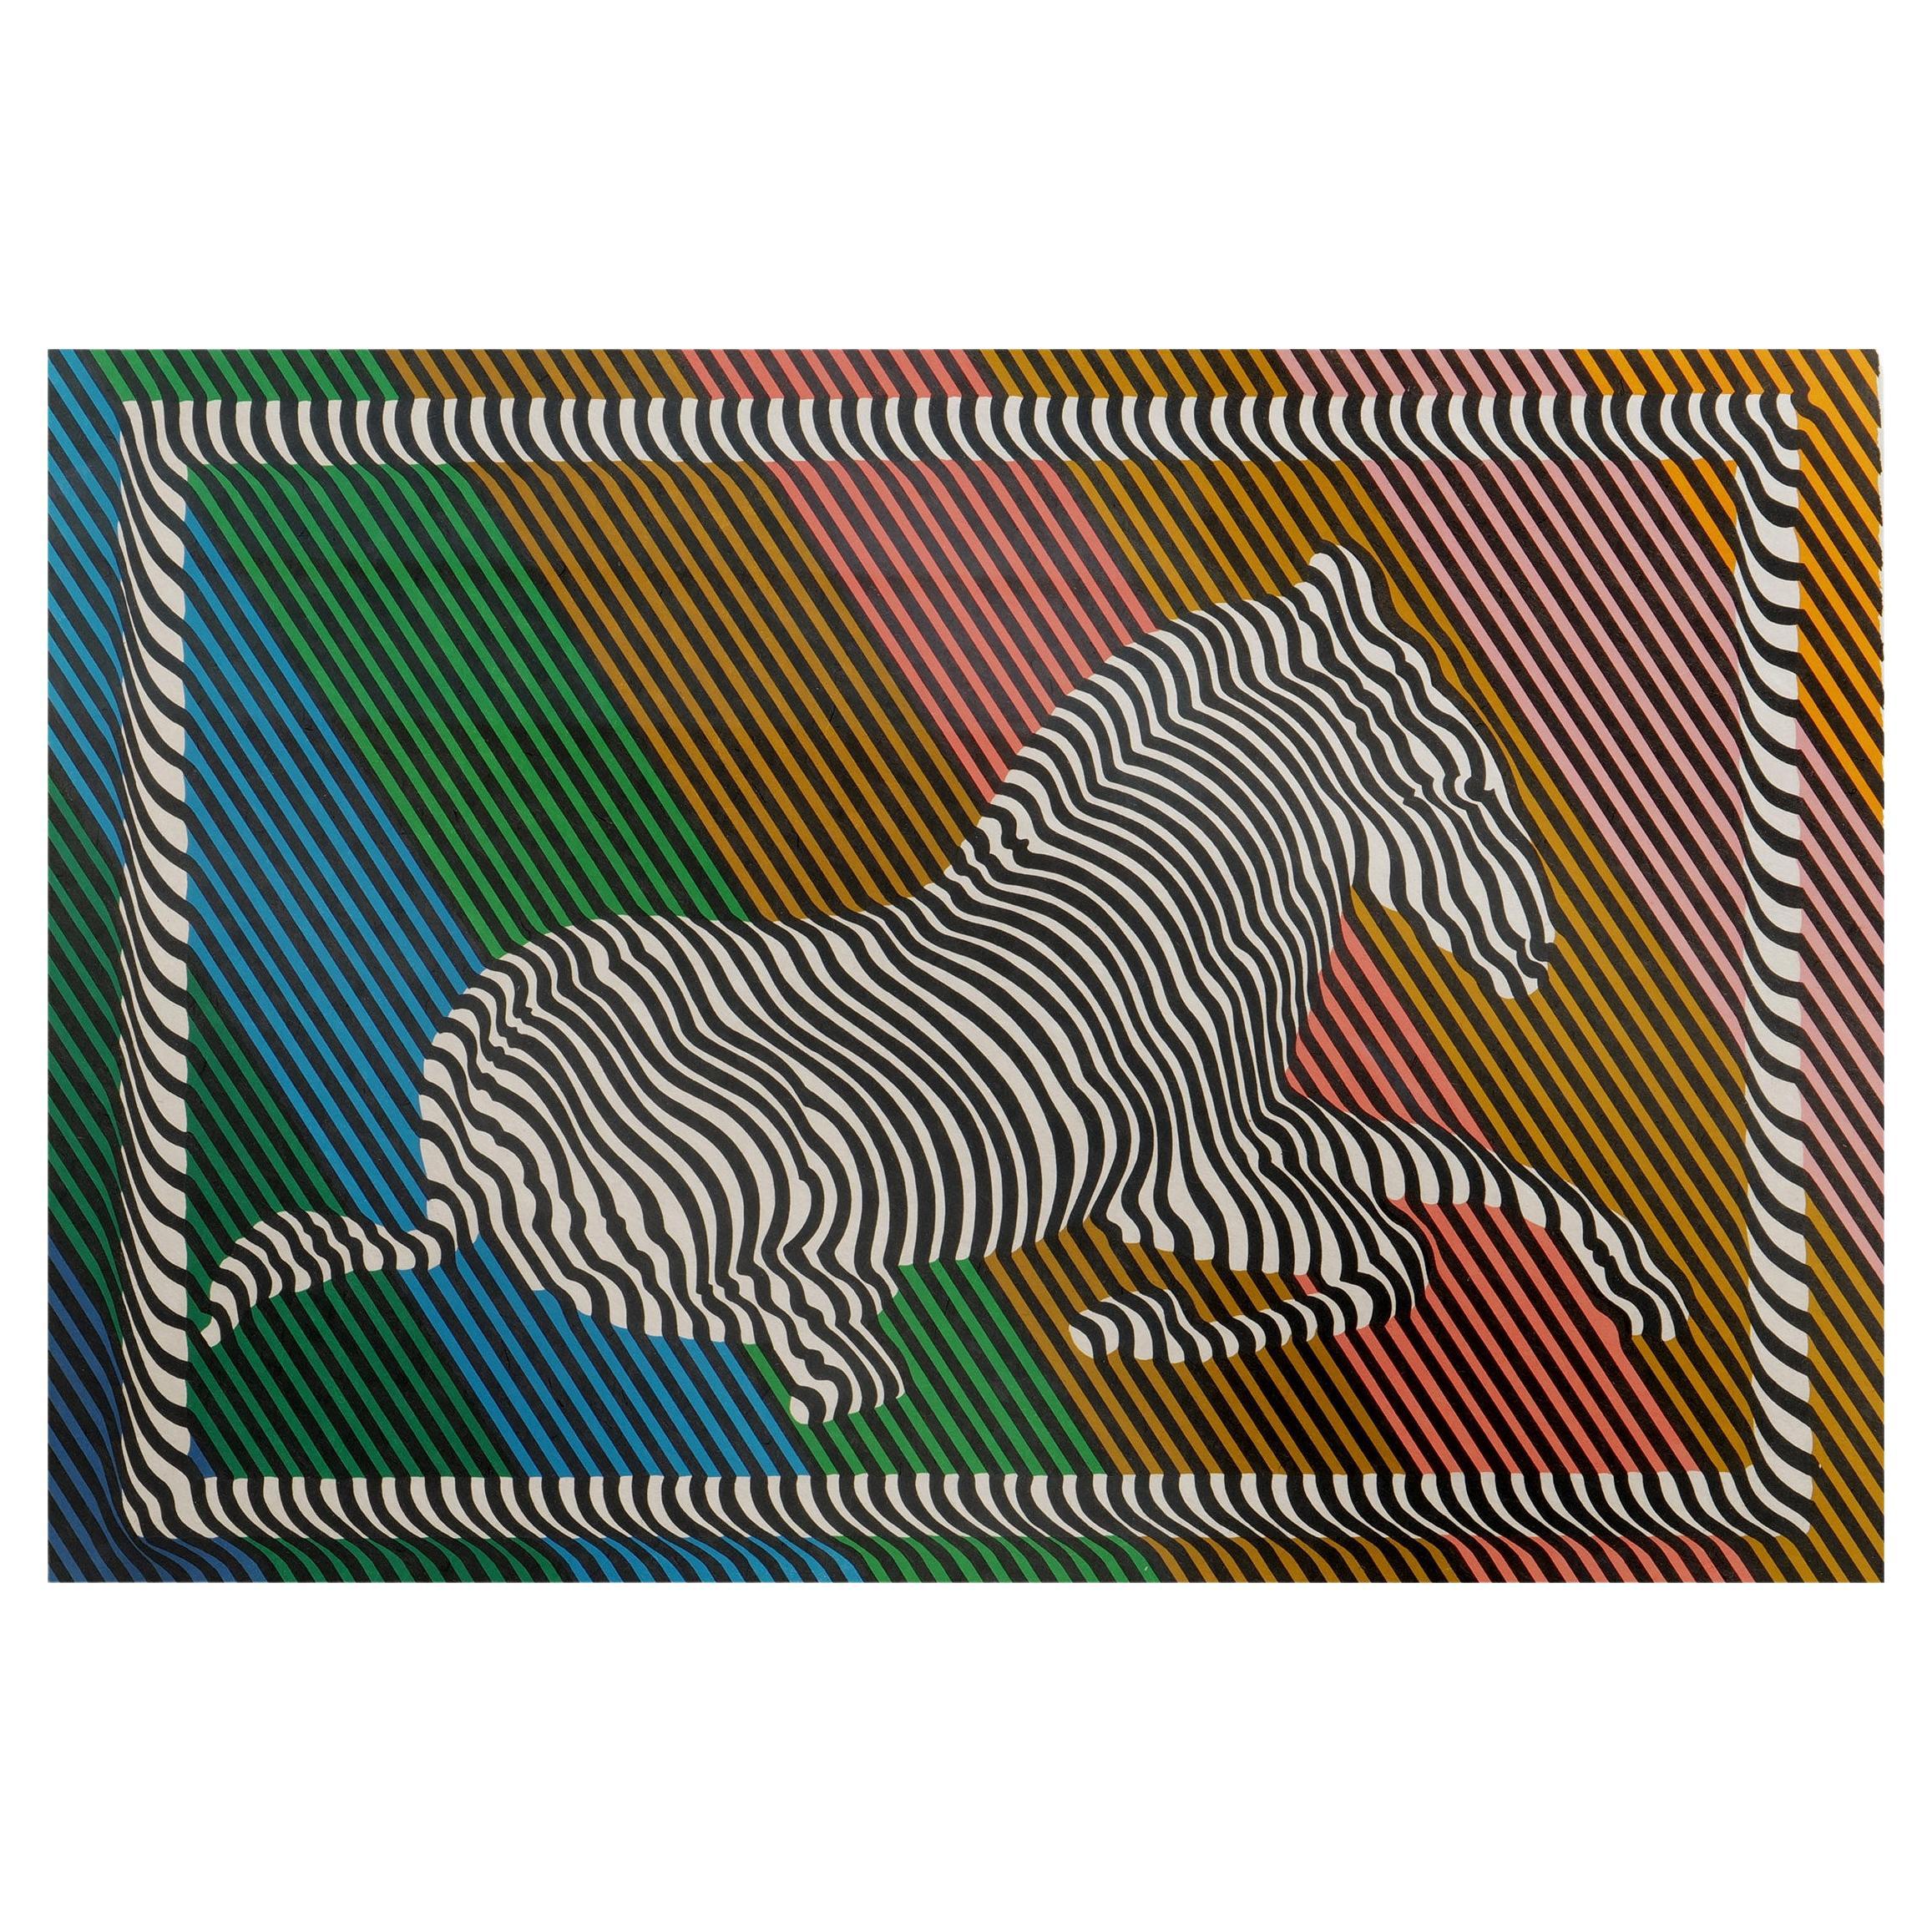 Victor Vasarely "Zebra Nr. III